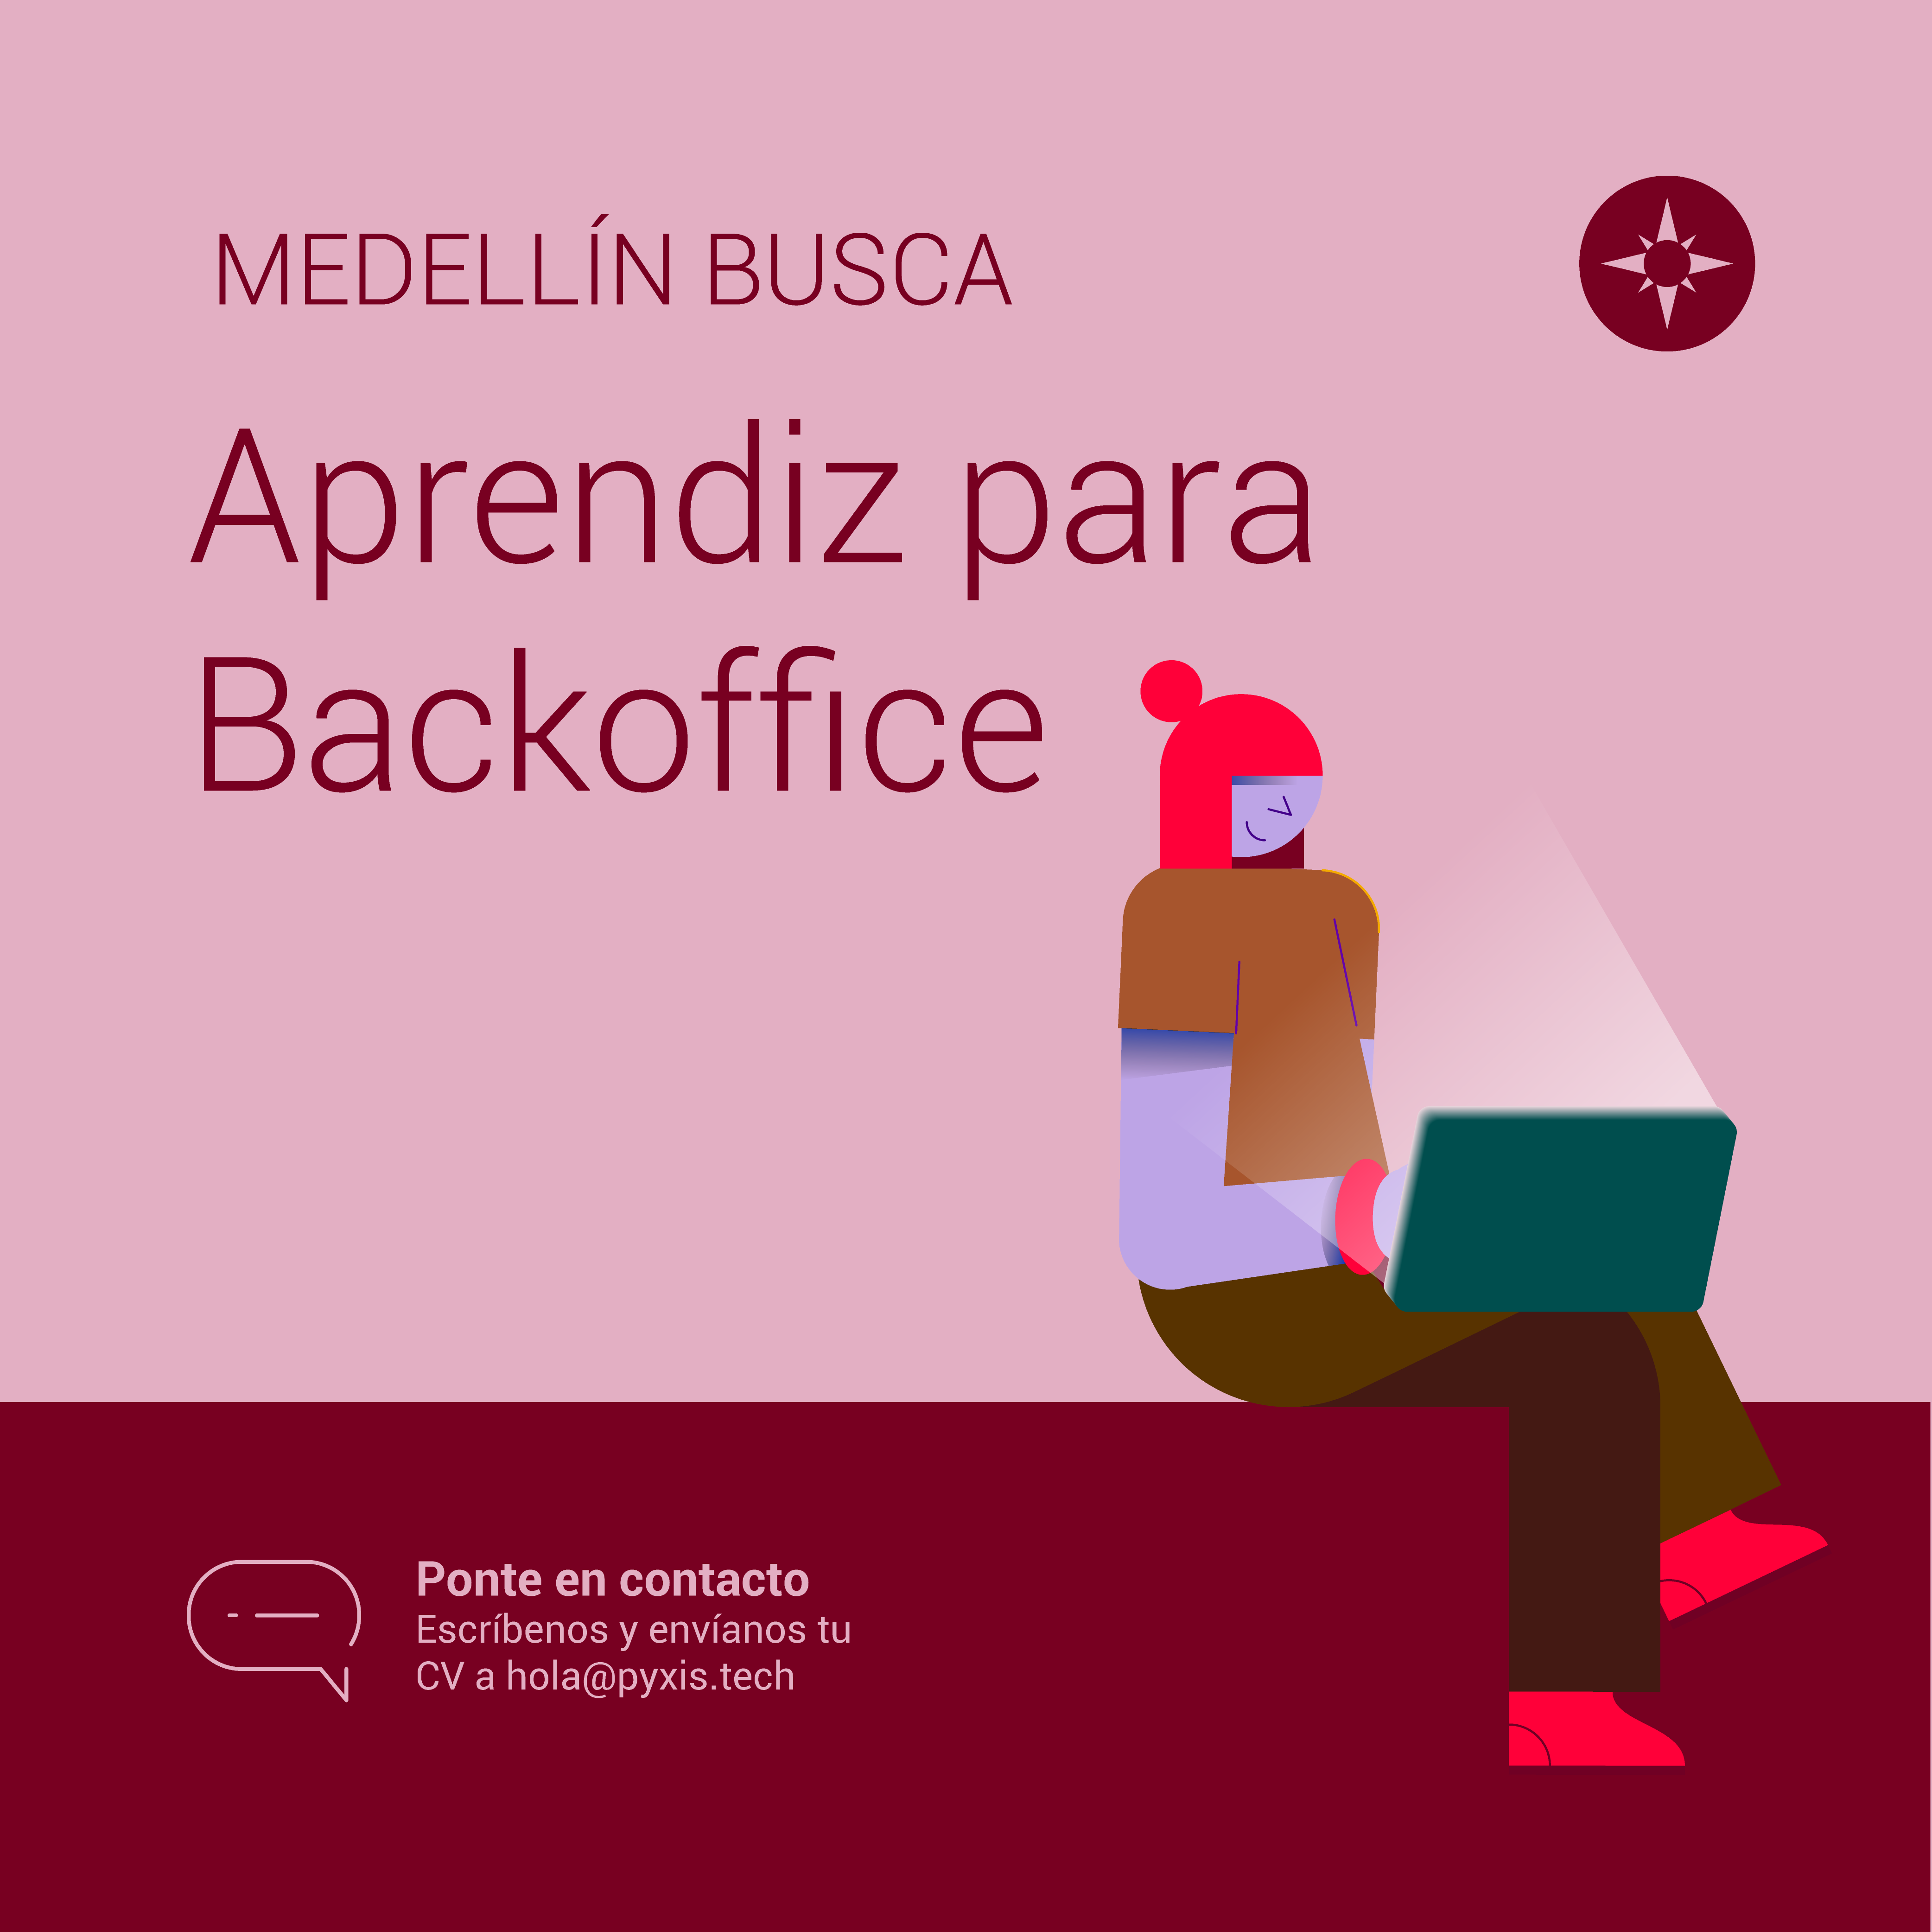 (Español) Buscamos Aprendiz para Backoffice en Medellín